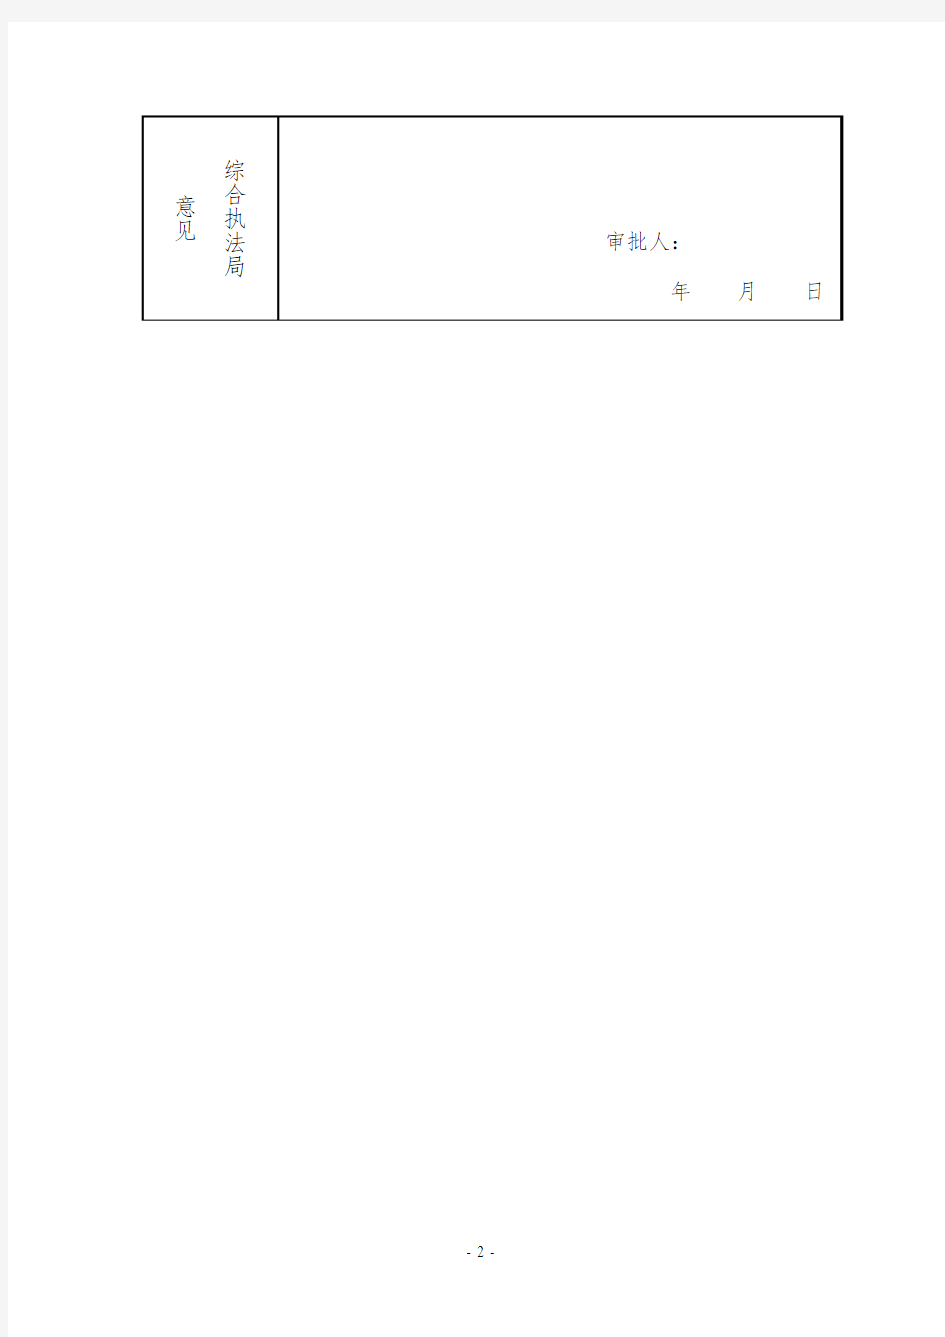 陕西西咸新区沣西新城门头牌匾设置备案登记表